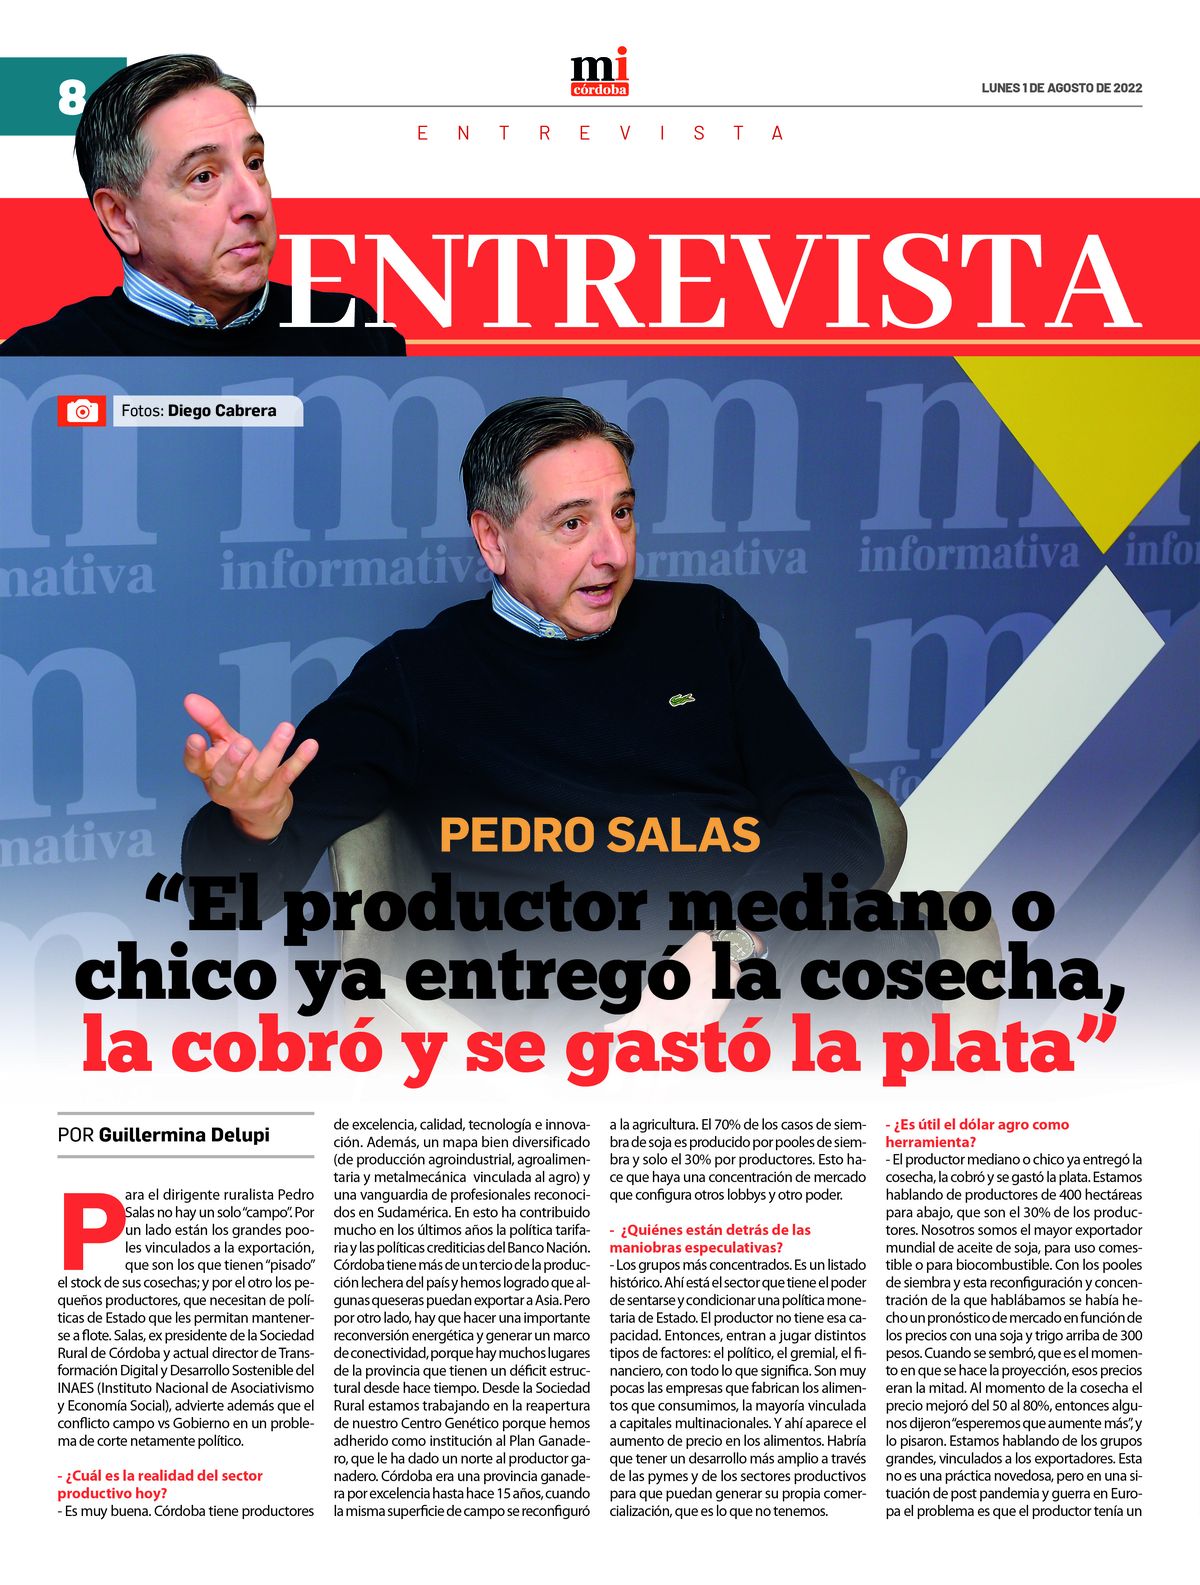 Ya circula la 20ma edición del semanario Marca Informativa Córdoba